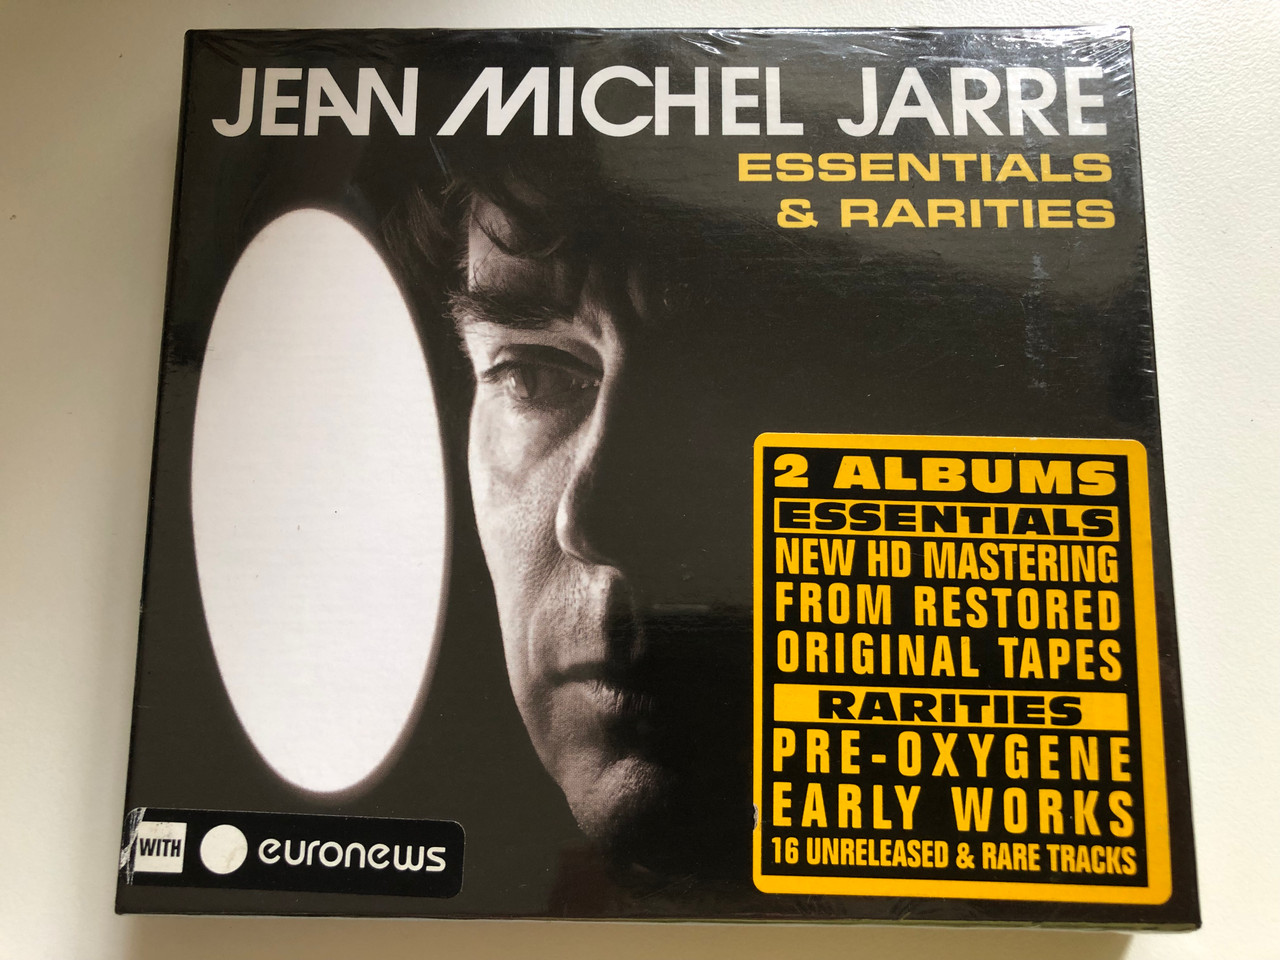 https://cdn10.bigcommerce.com/s-62bdpkt7pb/products/0/images/227203/Jean_Michel_Jarre_Essentials_Rarities_2_Albums_Essentials_-_New_HD_Mastering_From_Restored_Original_Tapes_Rarities_-_Pre-oxygene_Early_Works_16_Unreleased_Rare_Tracks_Disques_Dreyfus_1__02700.1652243295.1280.1280.JPG?c=2&_gl=1*x5g3bh*_ga*MjA2NTIxMjE2MC4xNTkwNTEyNTMy*_ga_WS2VZYPC6G*MTY1MjI0MjQyNC4zOTAuMS4xNjUyMjQzMDU4Ljg.